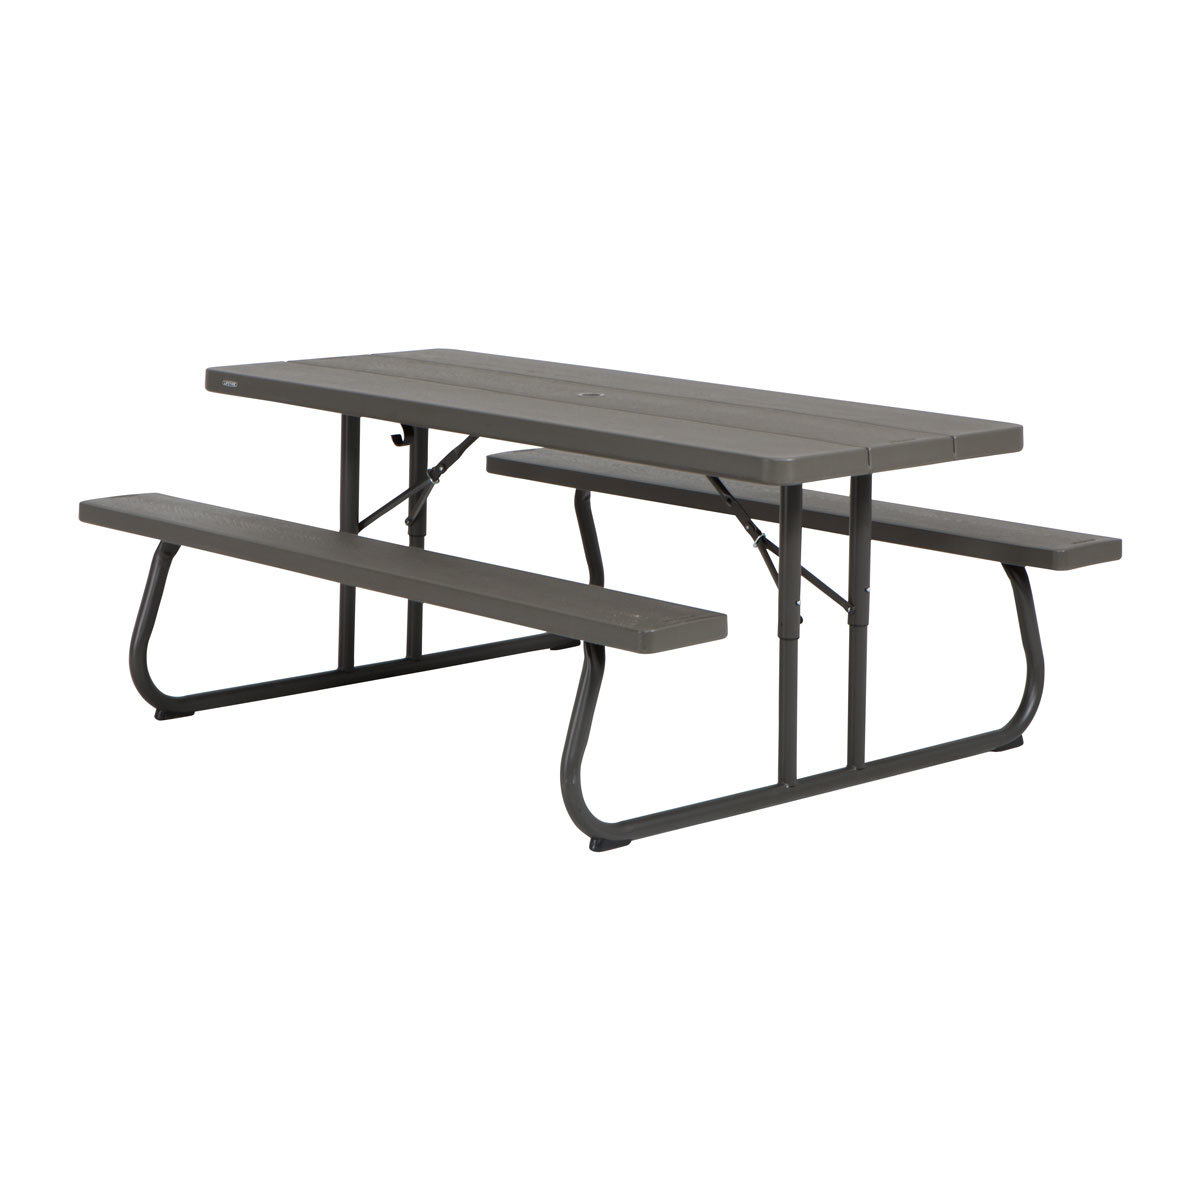 Lifetime 6ft (1.82m) Classic Folding Picnic Table - Model 60112